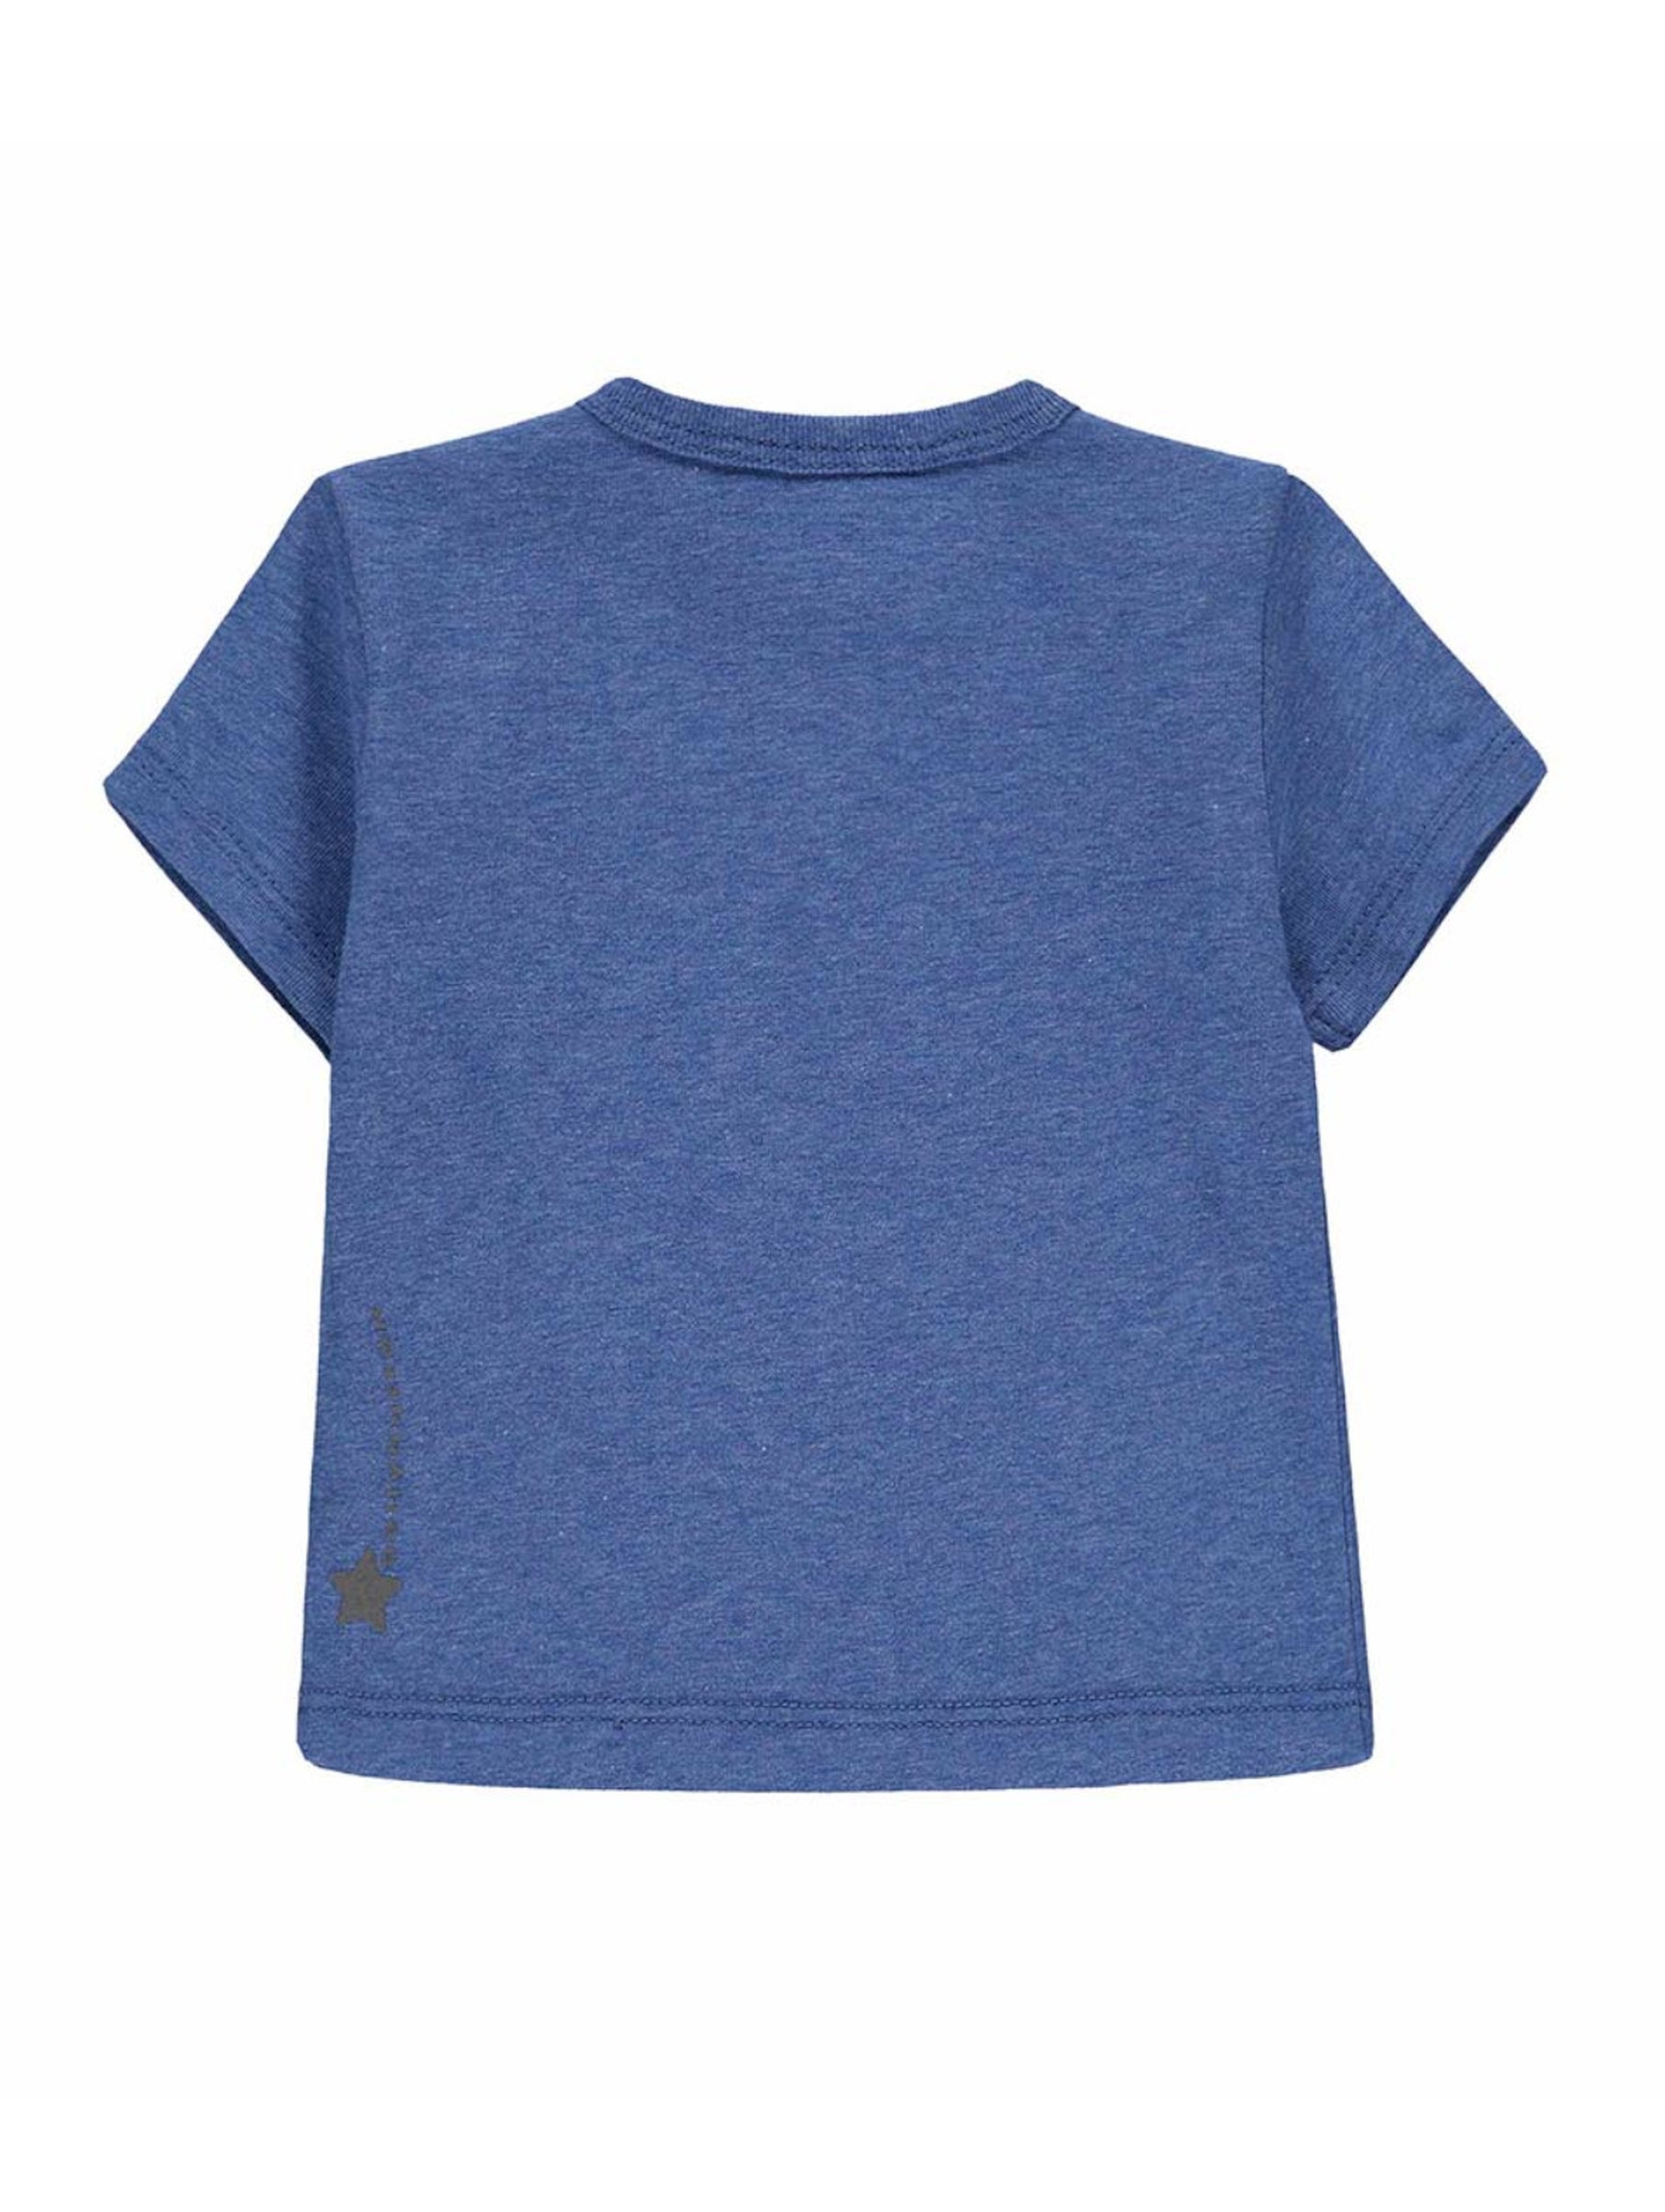 Koszulka chłopięca krótki rękaw, niebieska z nadrukiem, Bellybutton